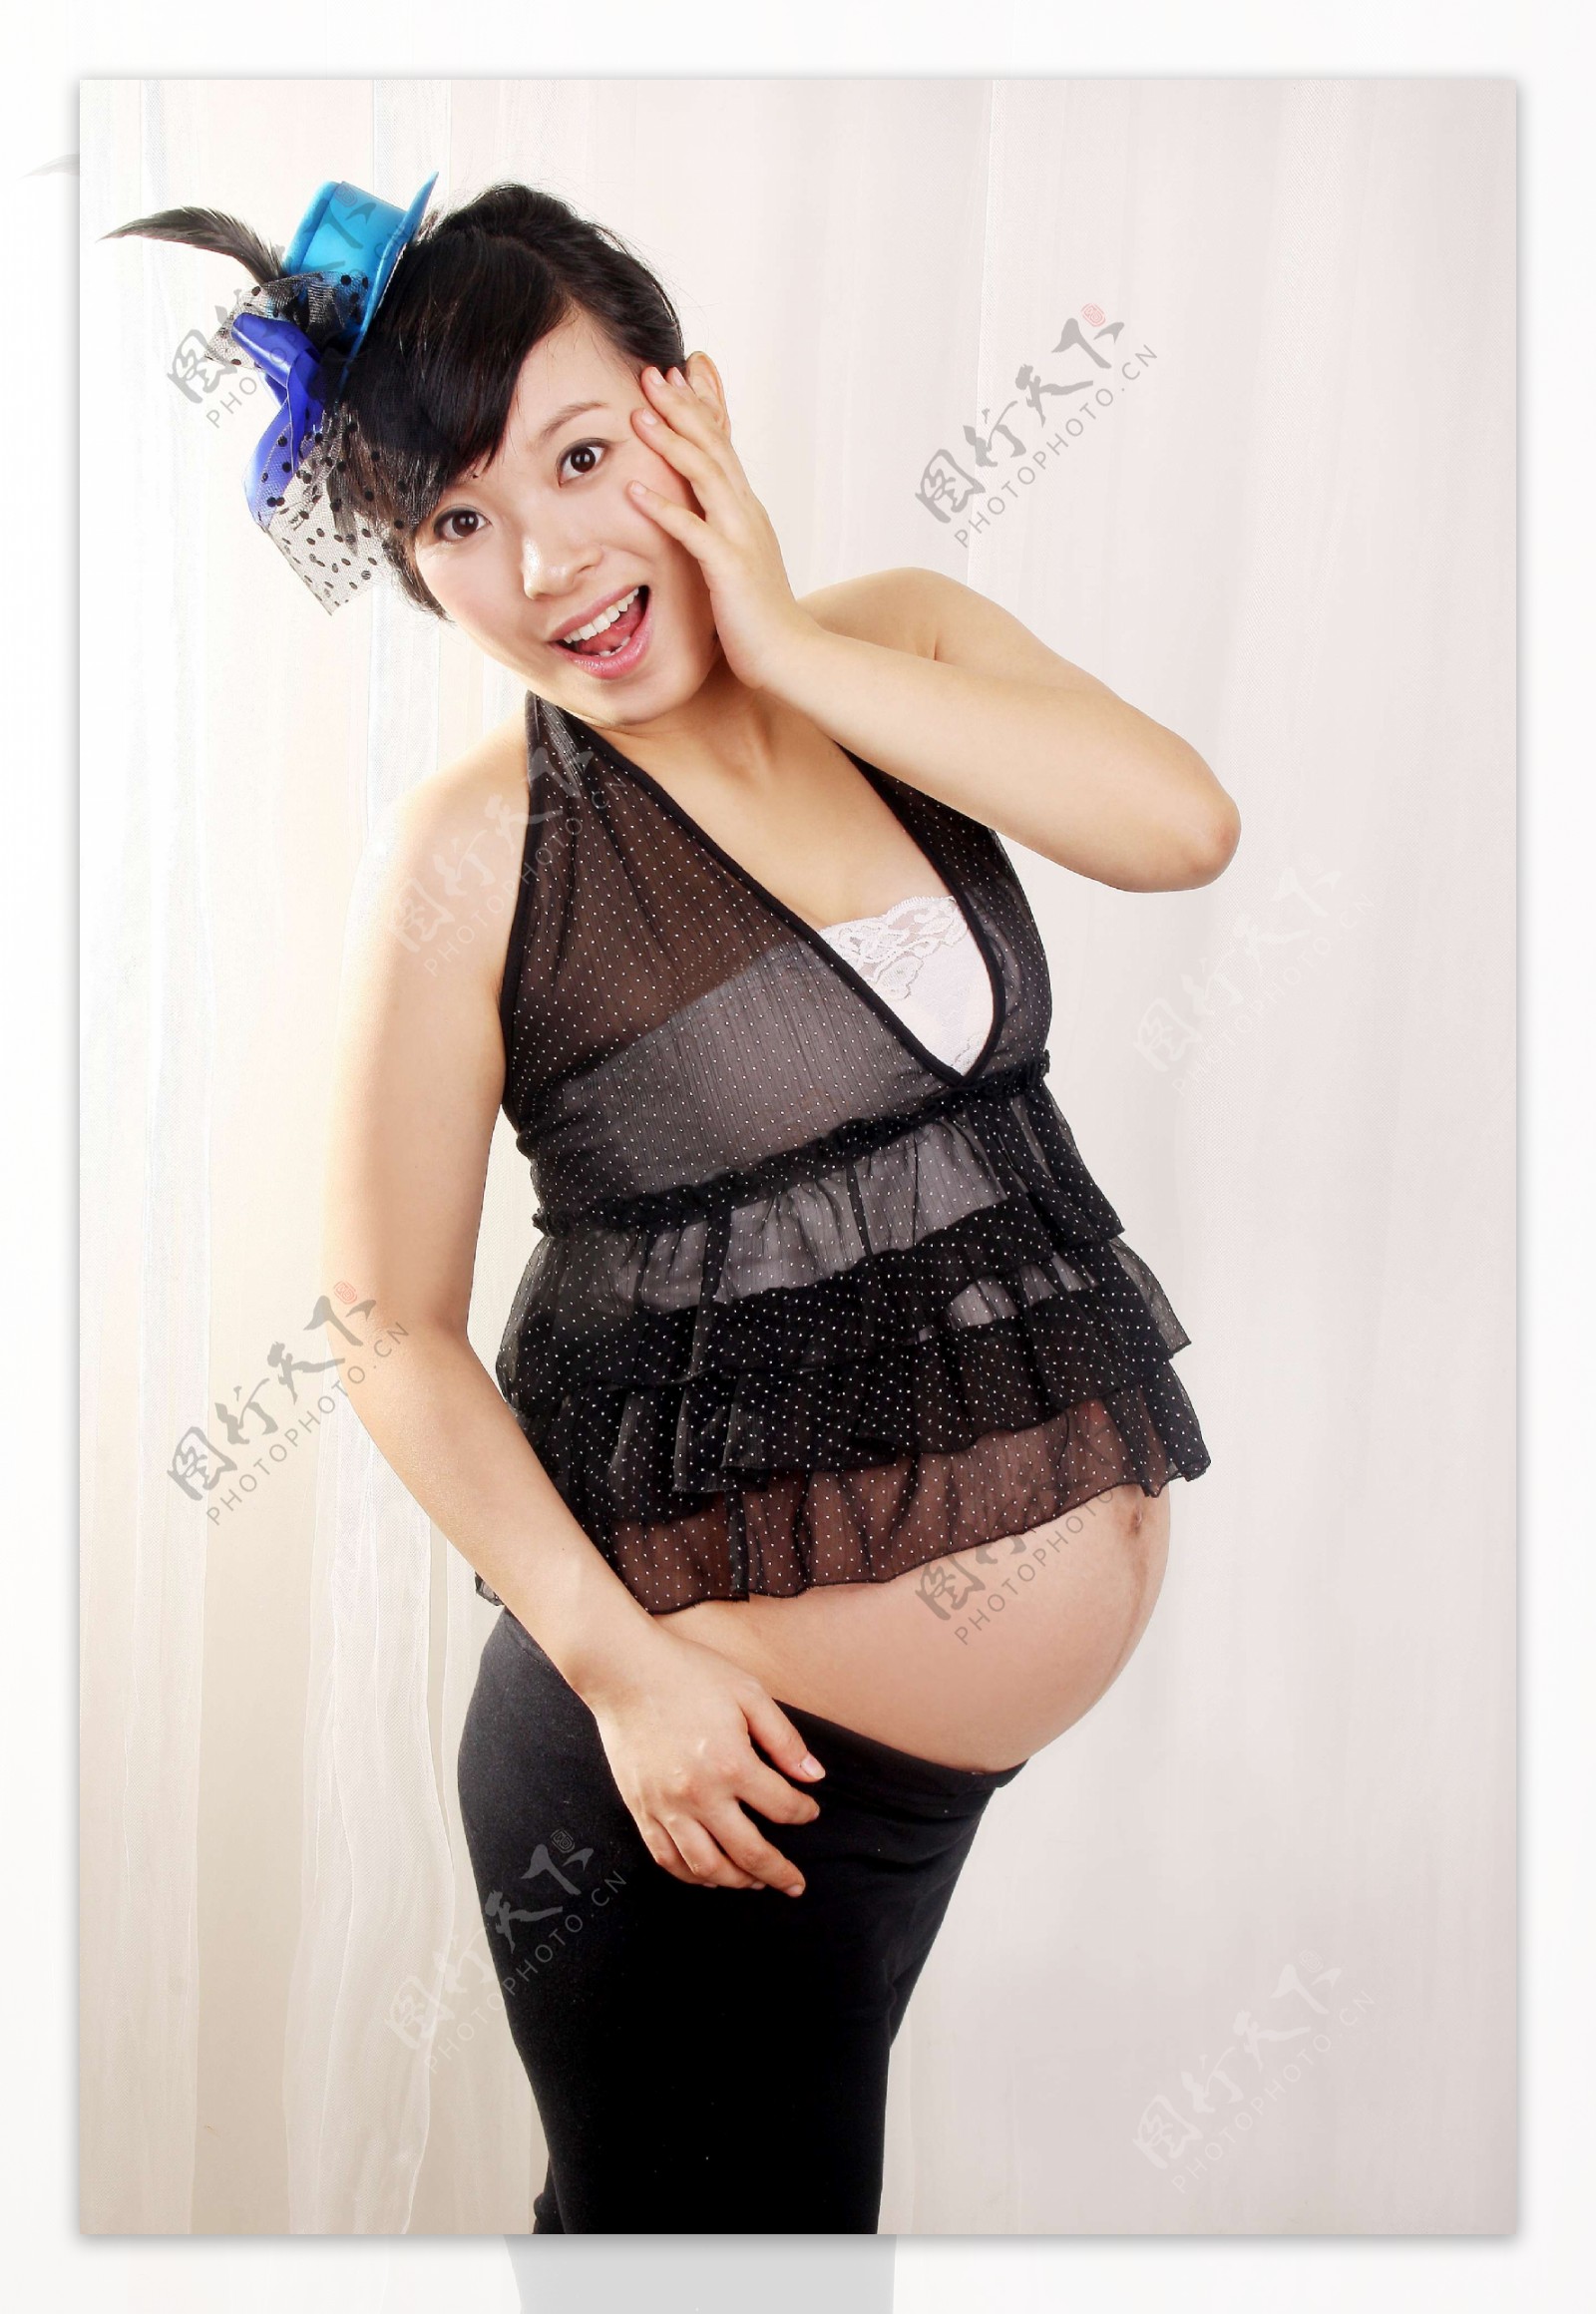 孕妇照片图片